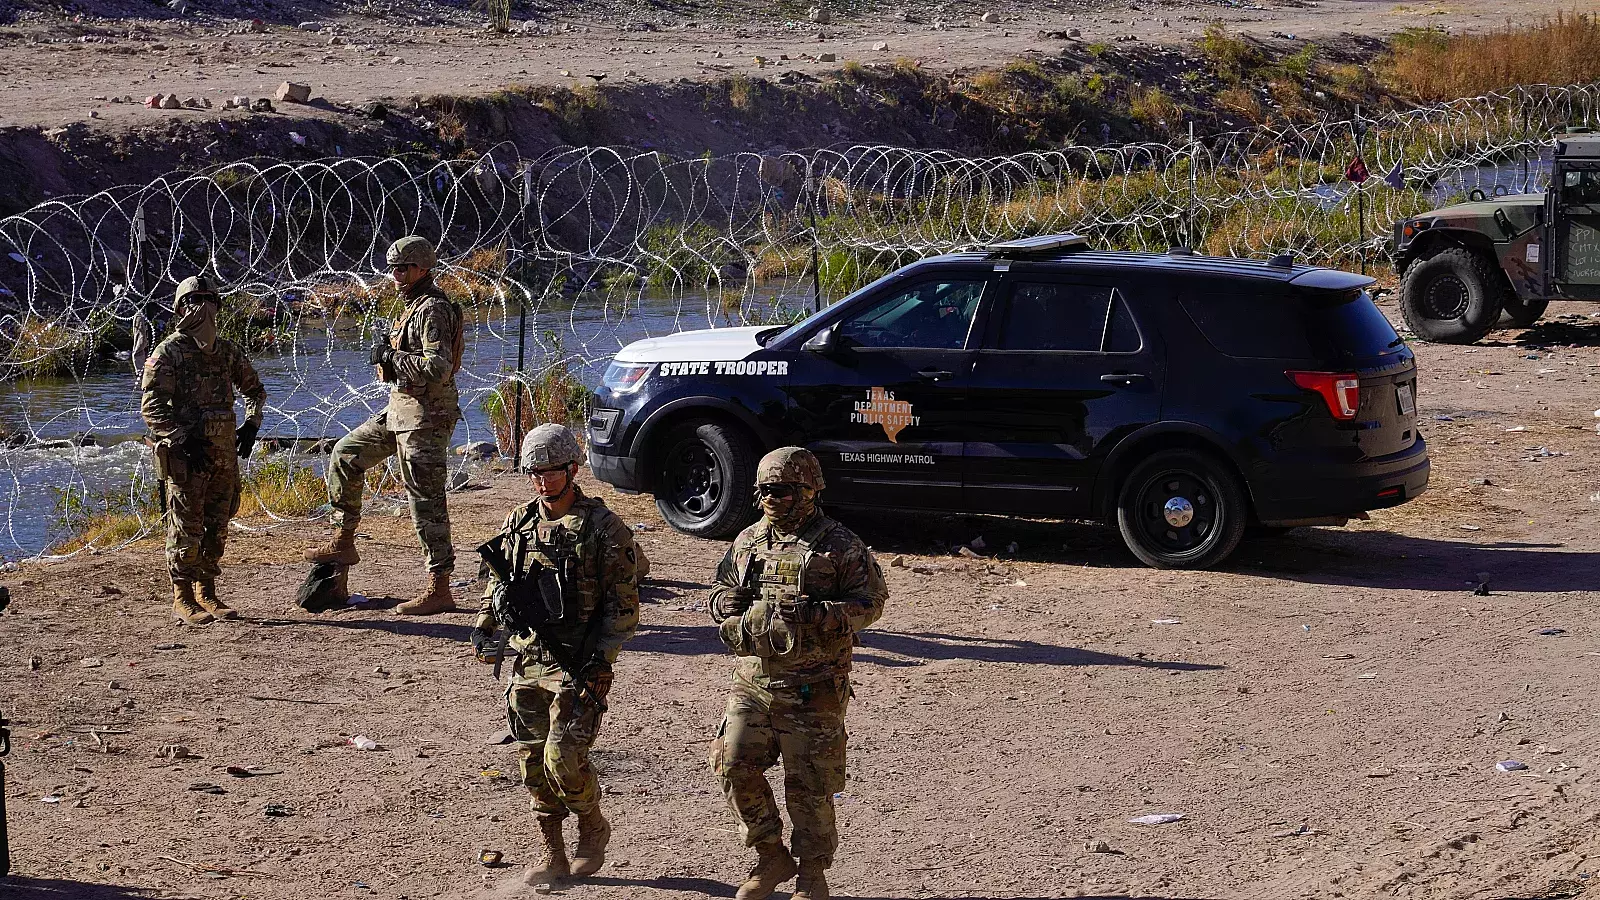 Juez Federal prohíbe quitar cerca de alambre de púas en la frontera de Texas